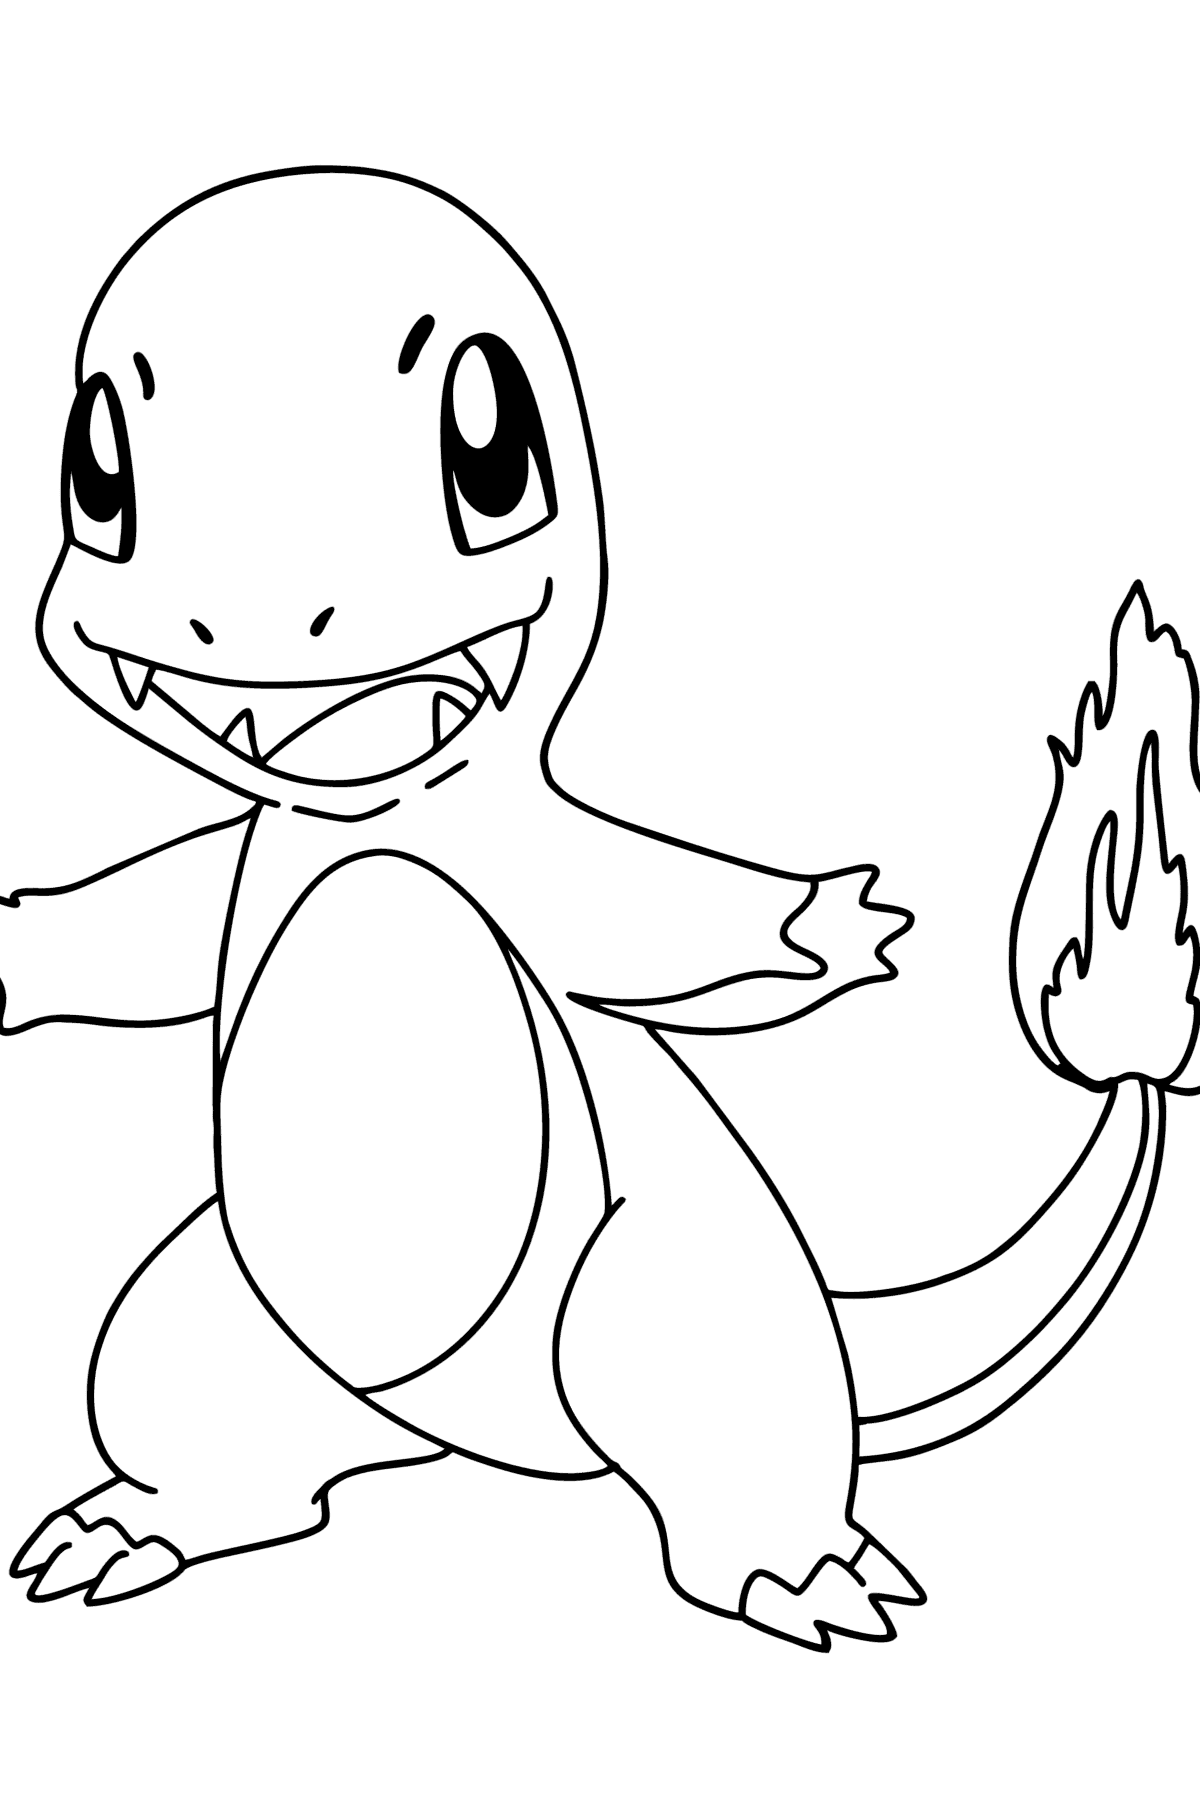 Раскраска Покемон (Pokemon Go) Charmander - Картинки для Детей